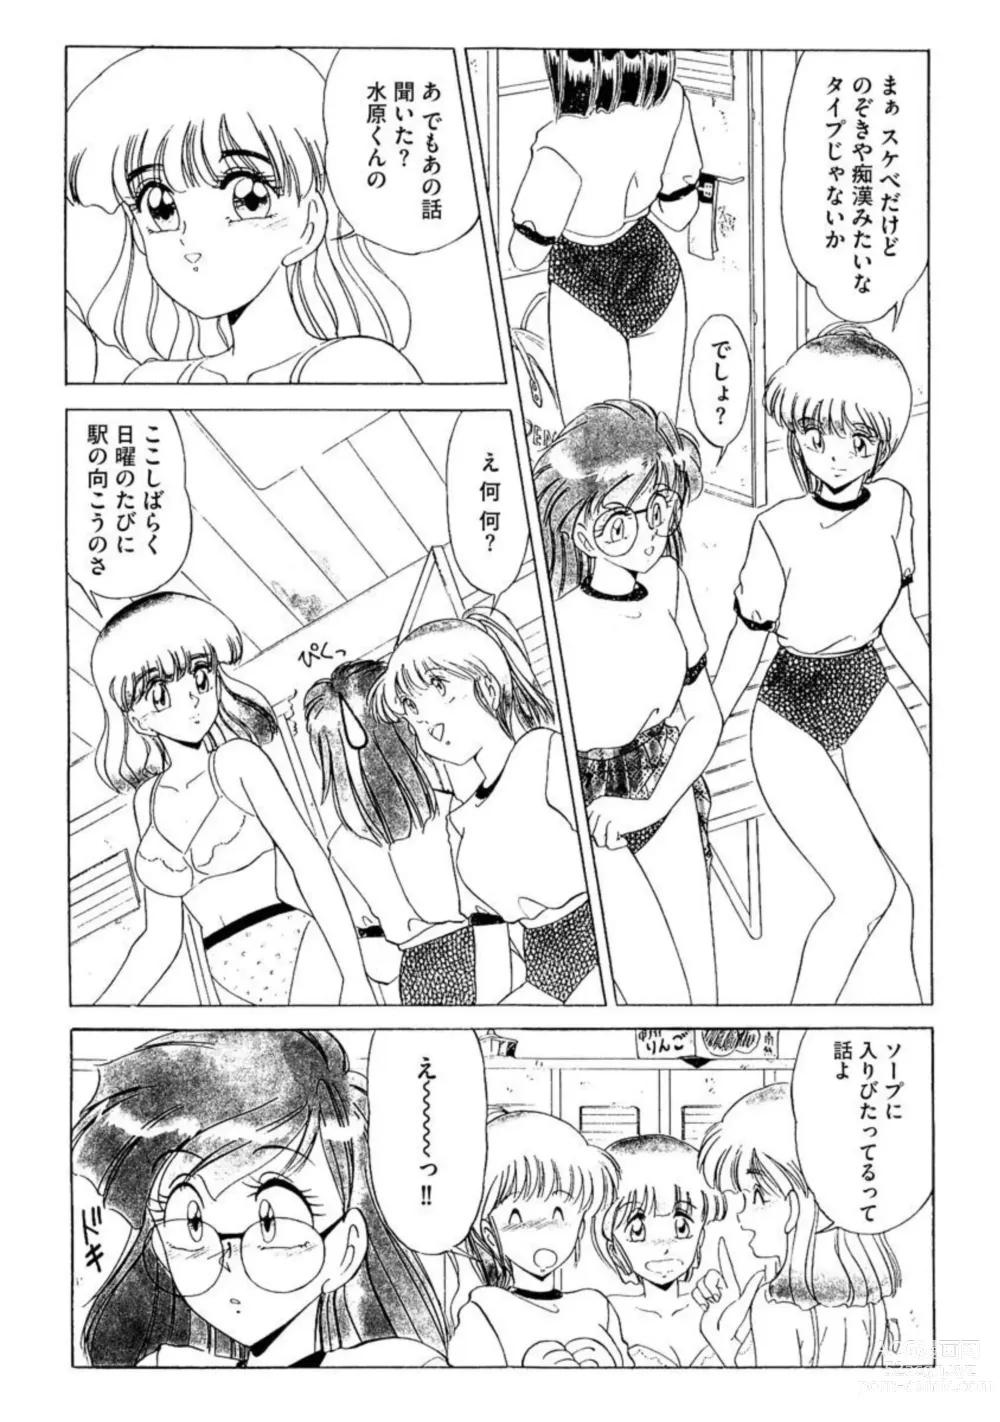 Page 5 of manga Ichiban Kimochi no ī o Furo 1